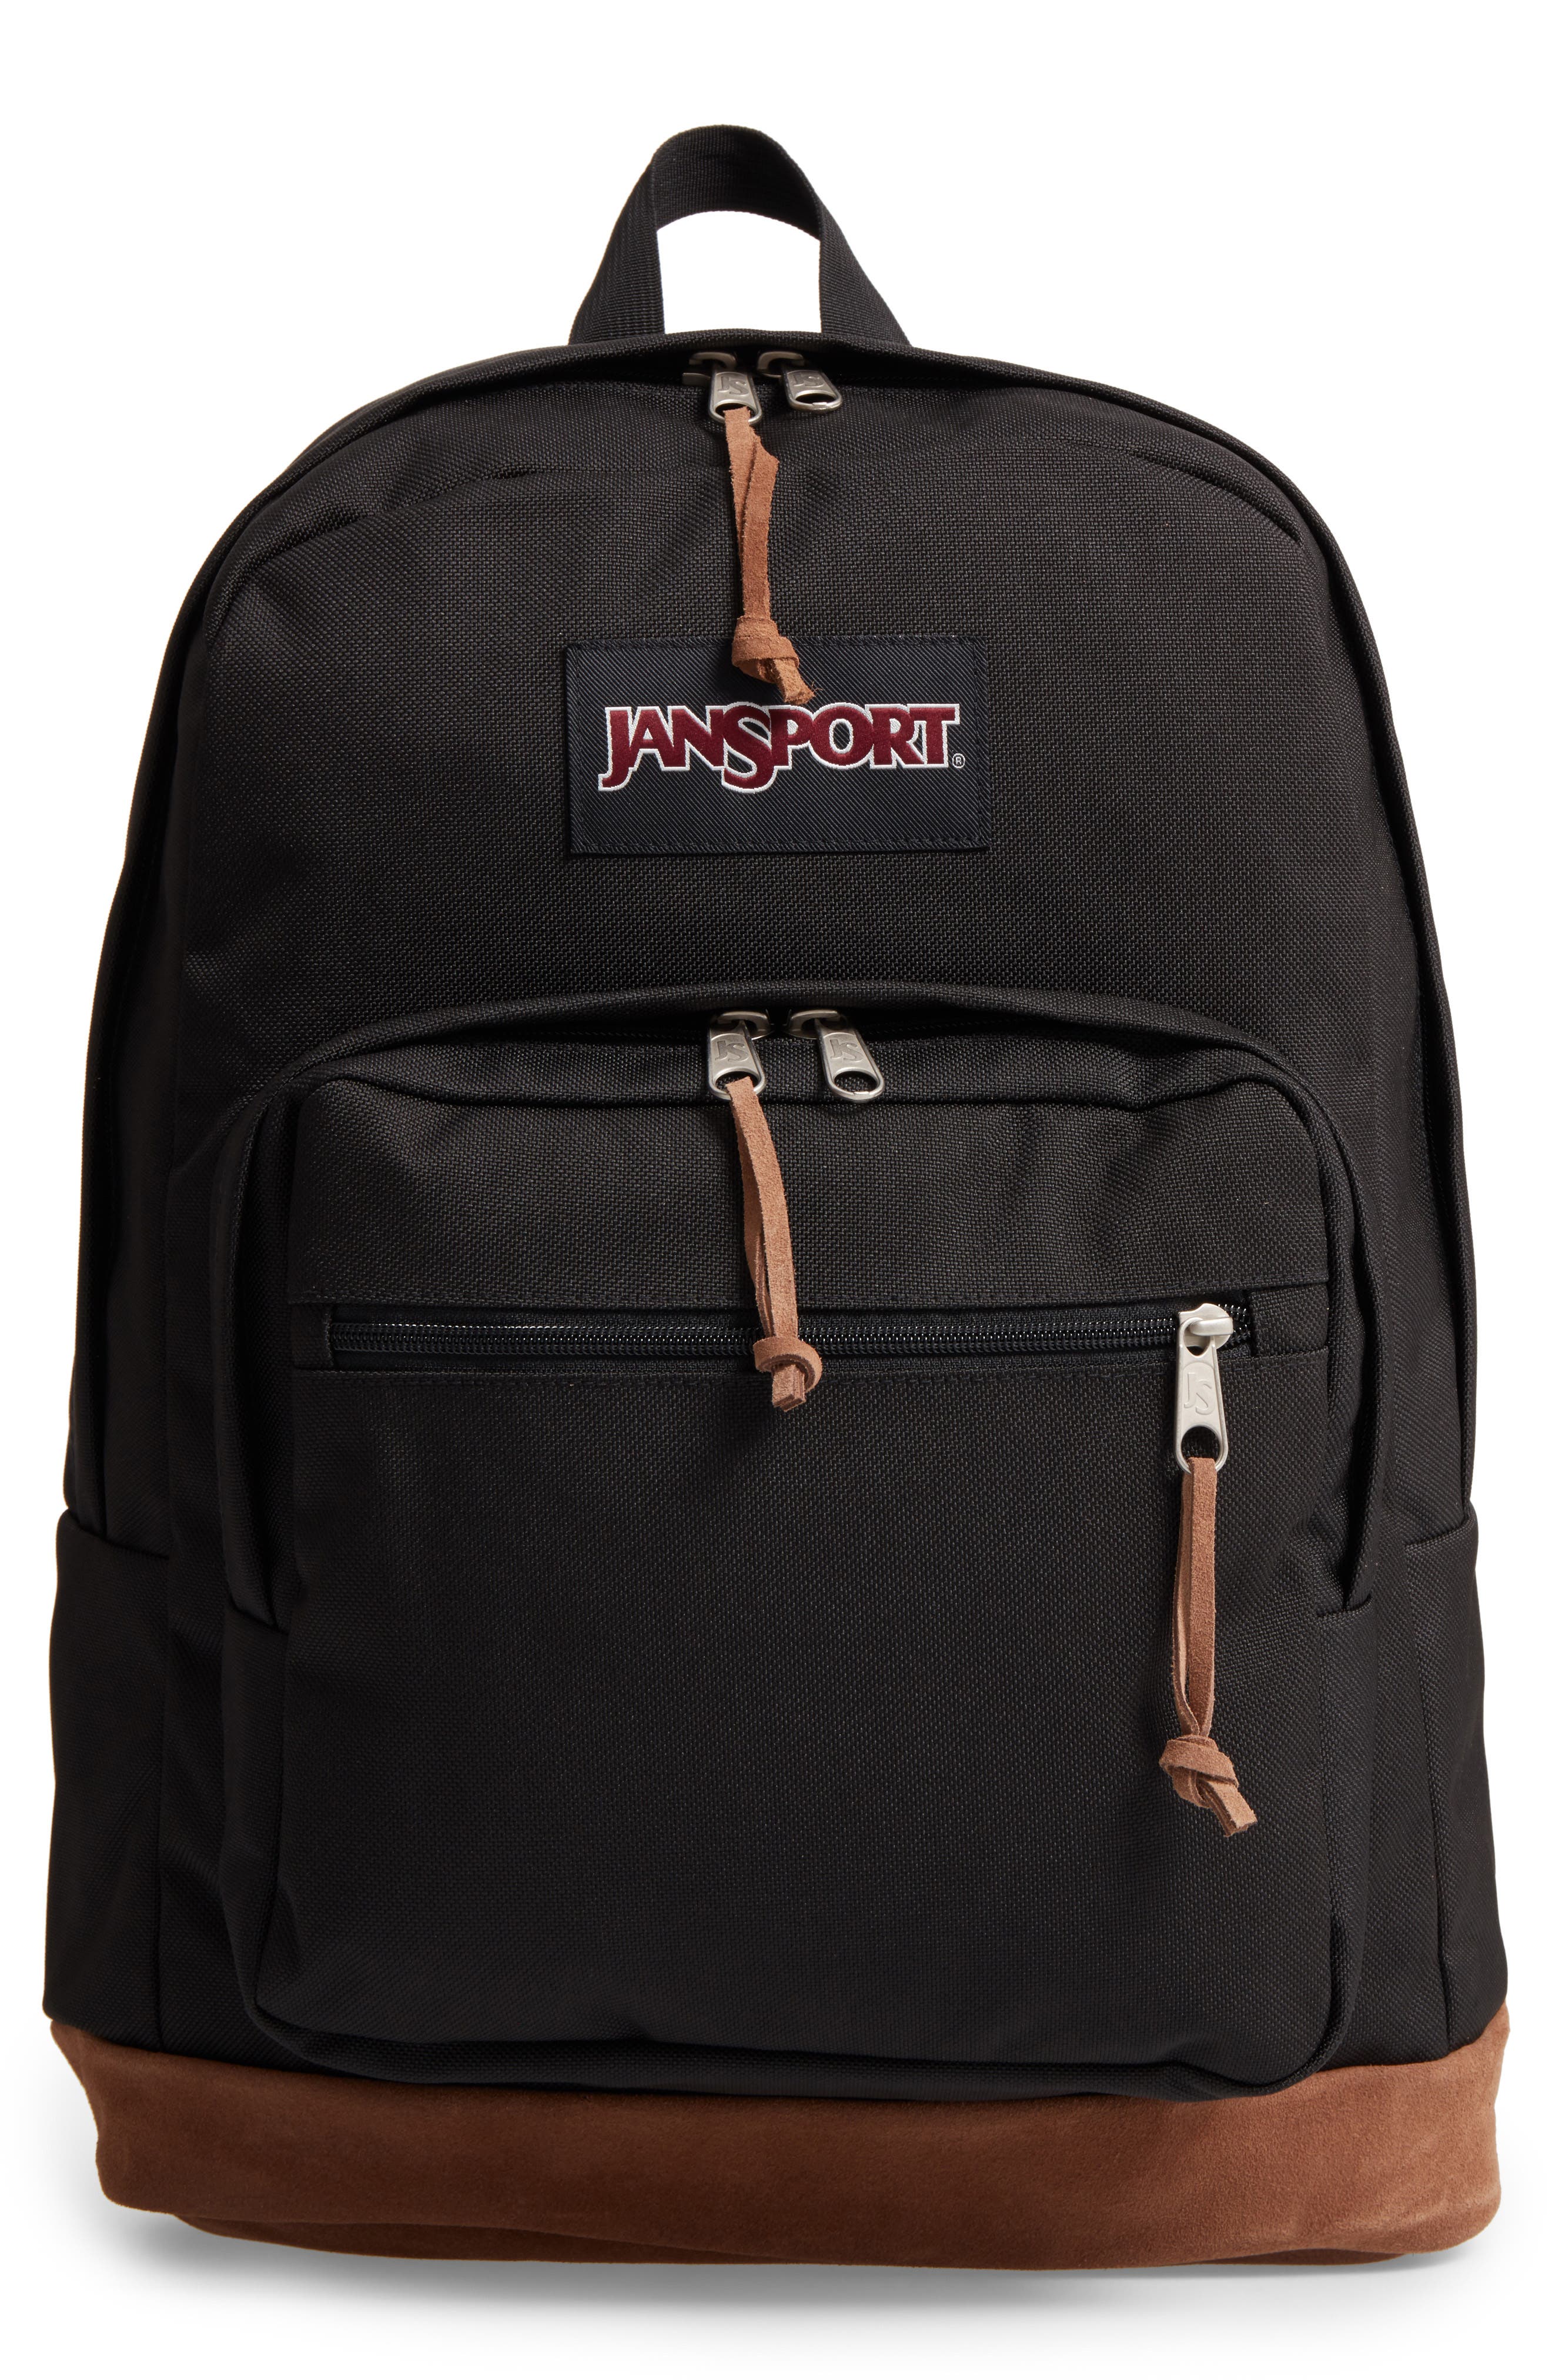 jansport backpack nordstrom